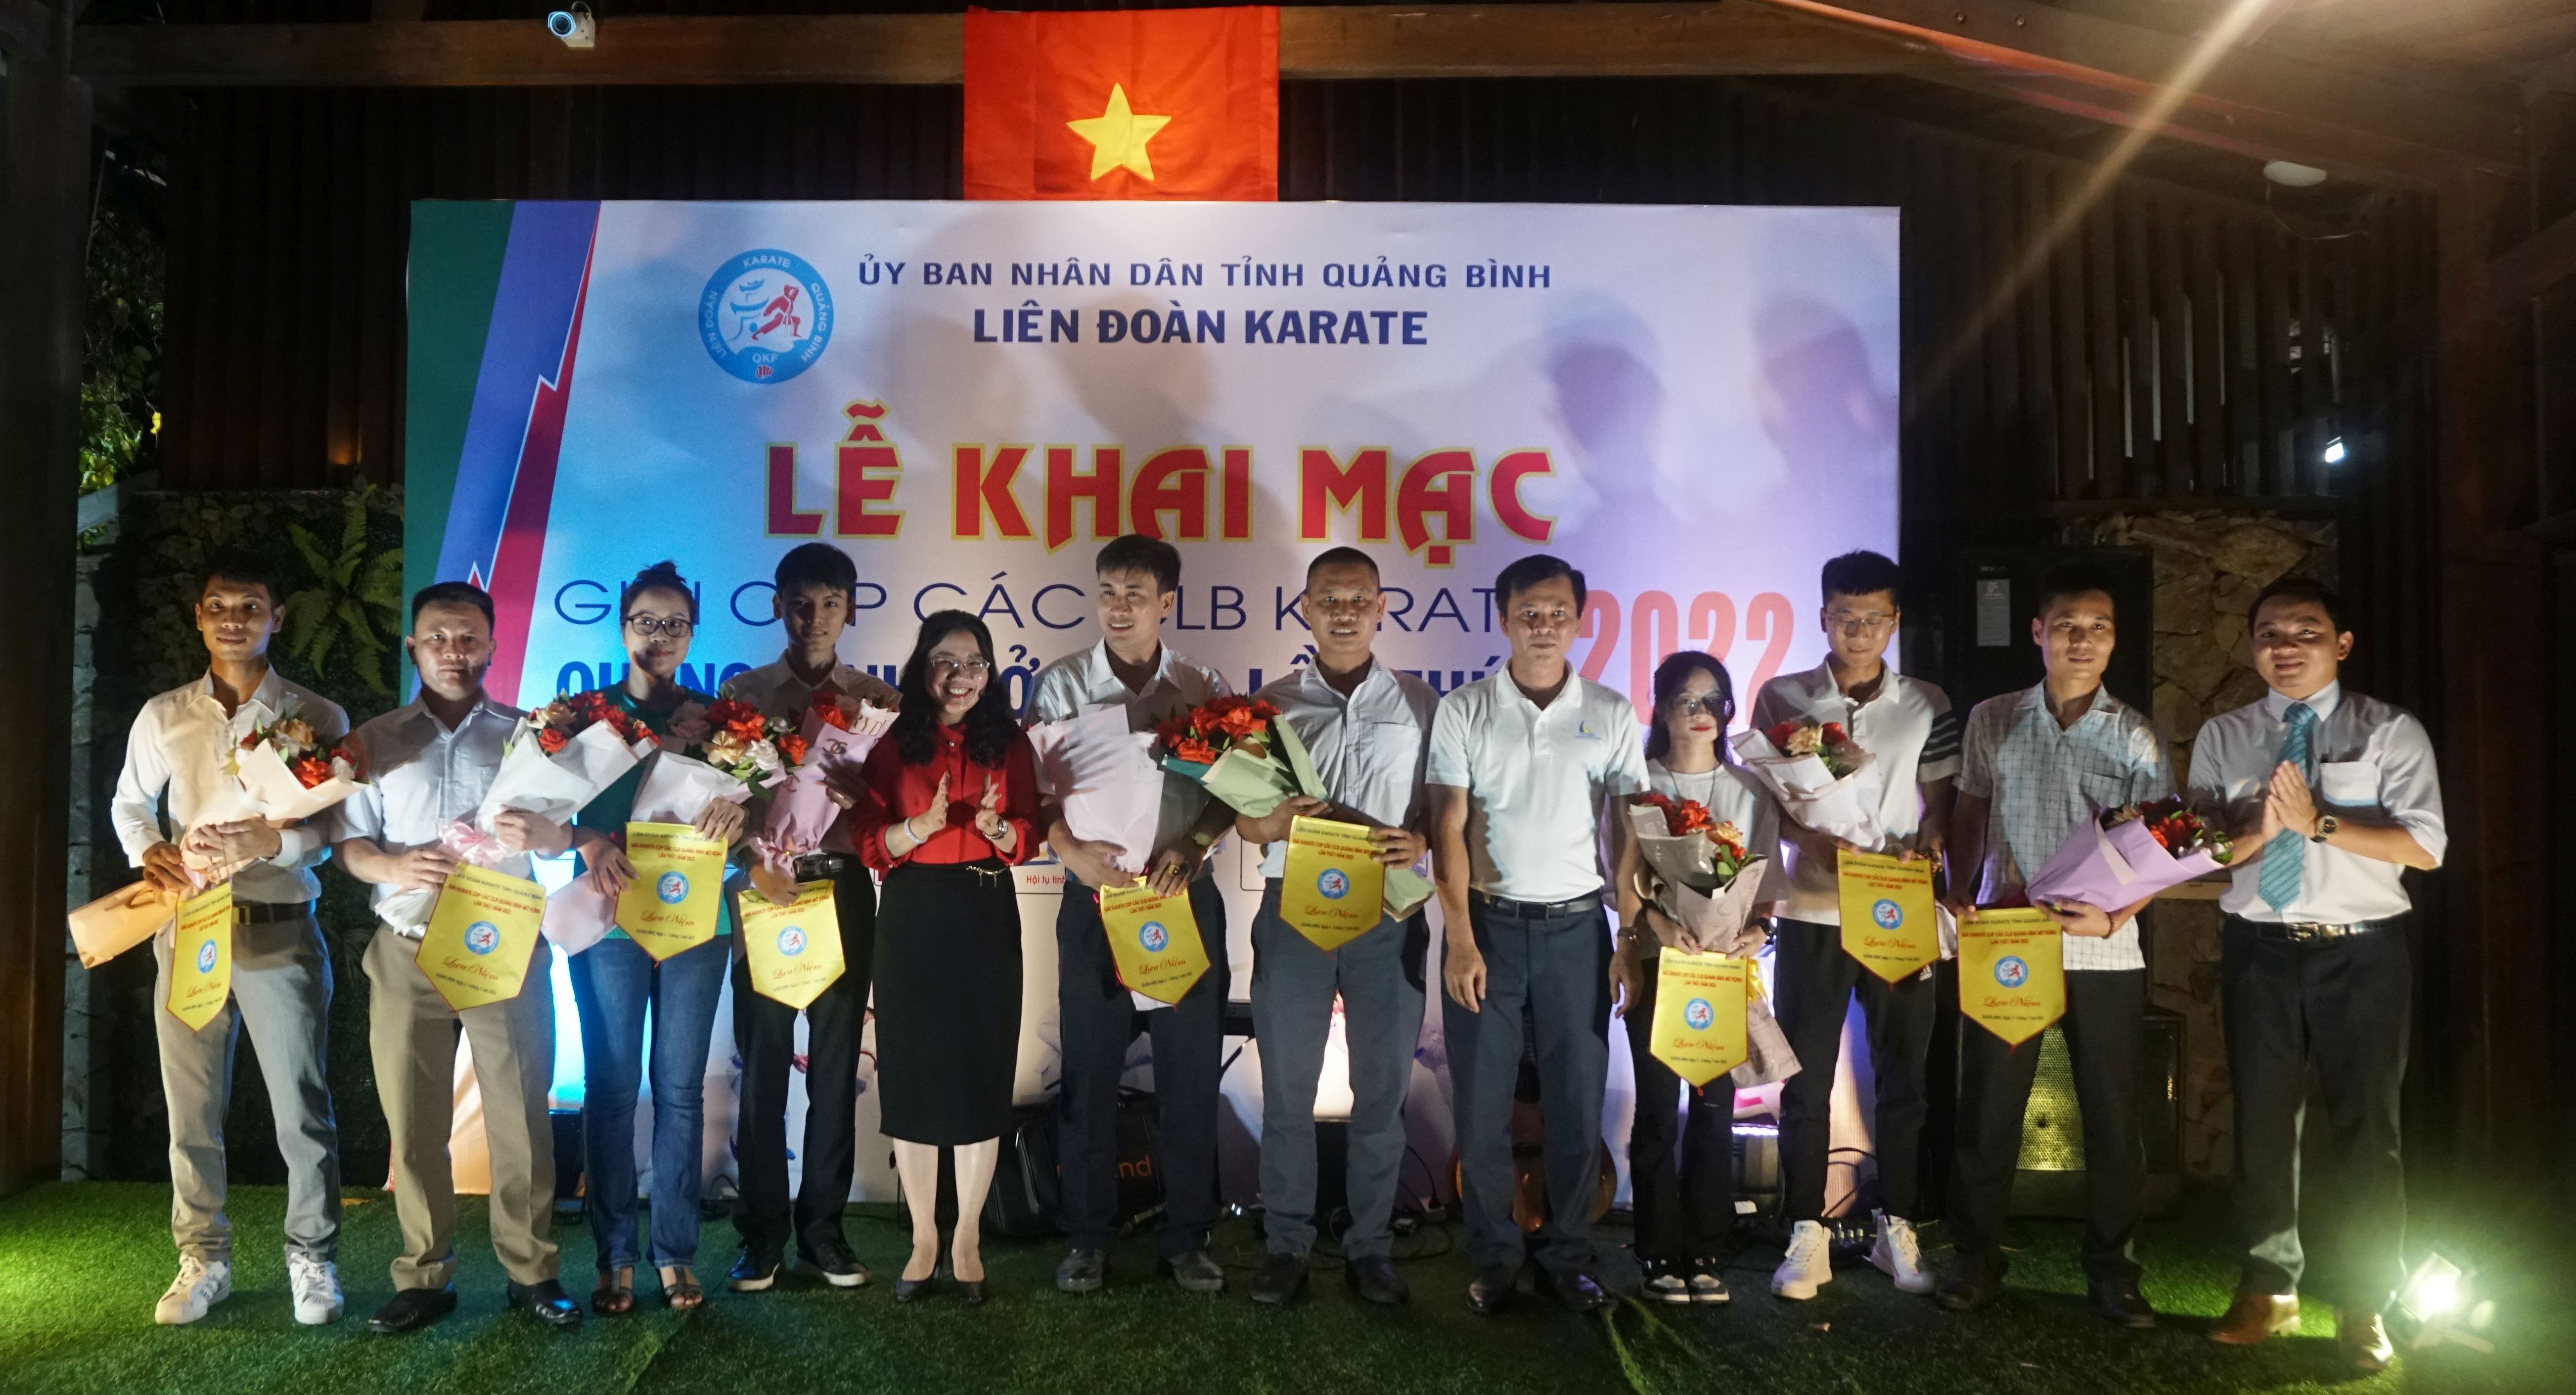 256 vận động viên tranh tài tại giải Karate cúp các CLB Quảng Bình mở rộng